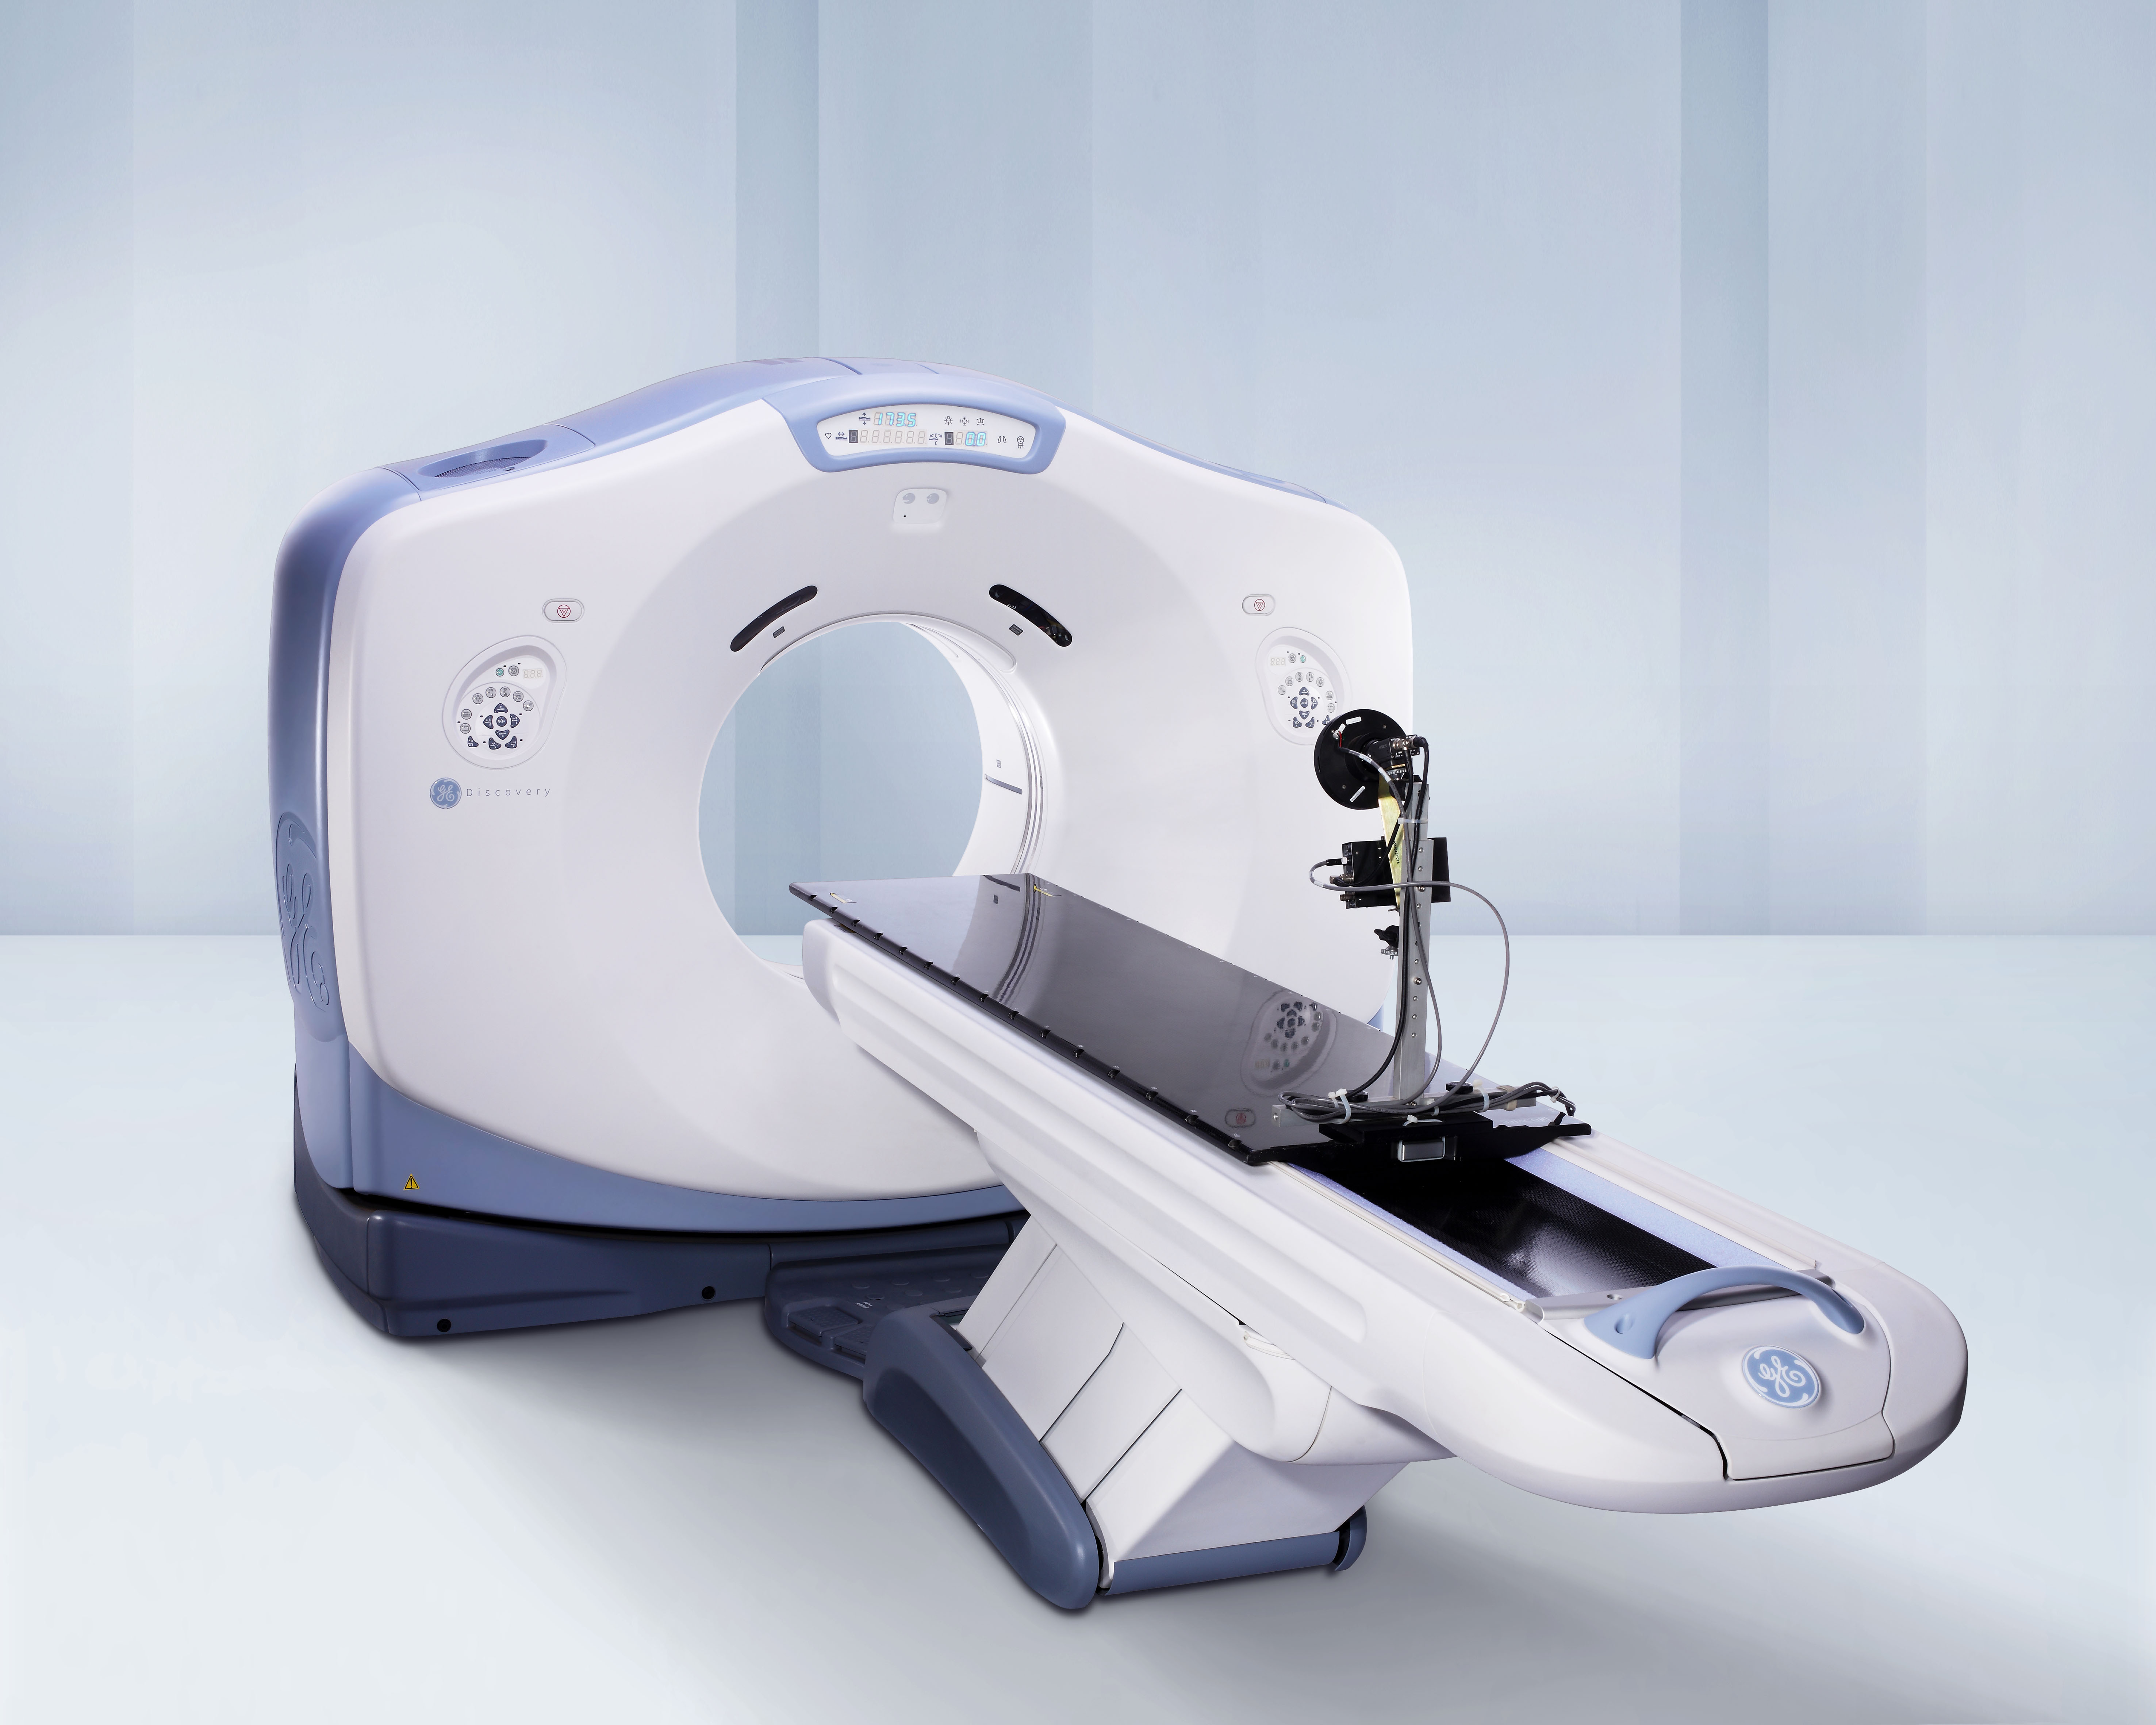 Superficie plana para simulación de radioterapia marca Diacor compatible con sistemas CT and PET/CT Systems - RT16, DVCT, Disc 600/690, HD750 and VCT